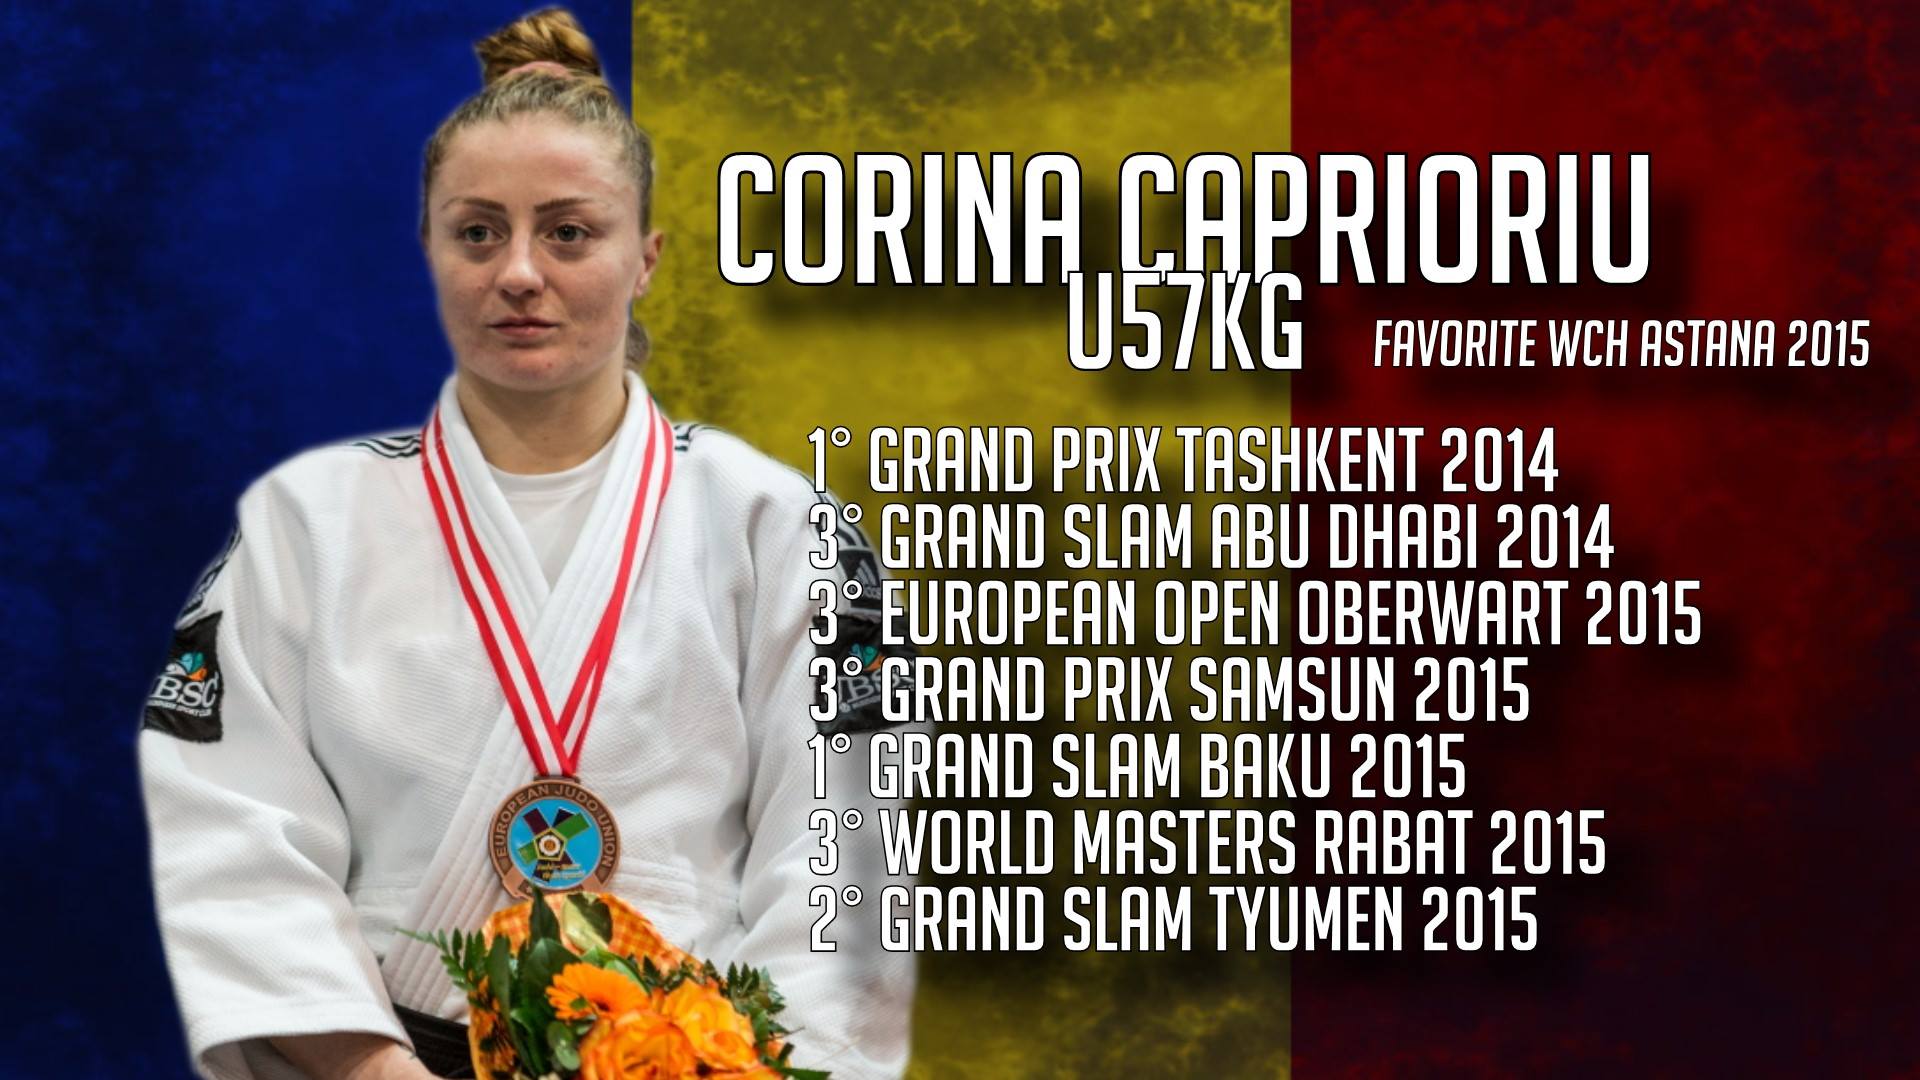 Corina Stefan Caprioriu